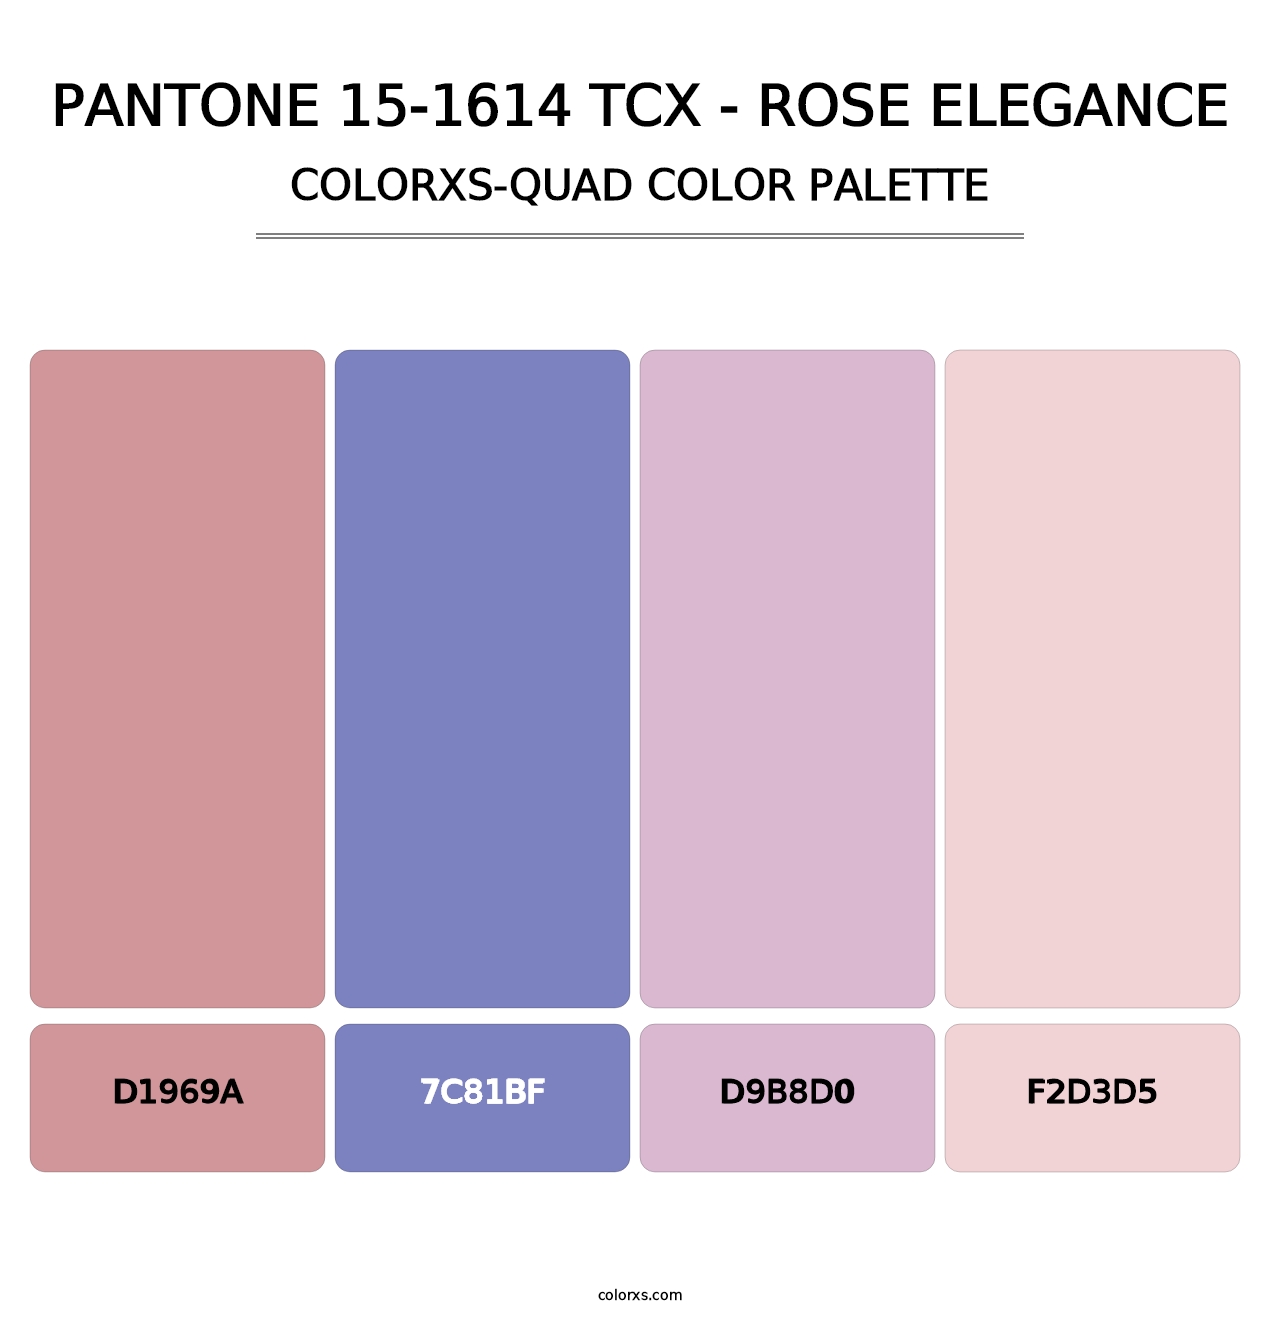 PANTONE 15-1614 TCX - Rose Elegance - Colorxs Quad Palette